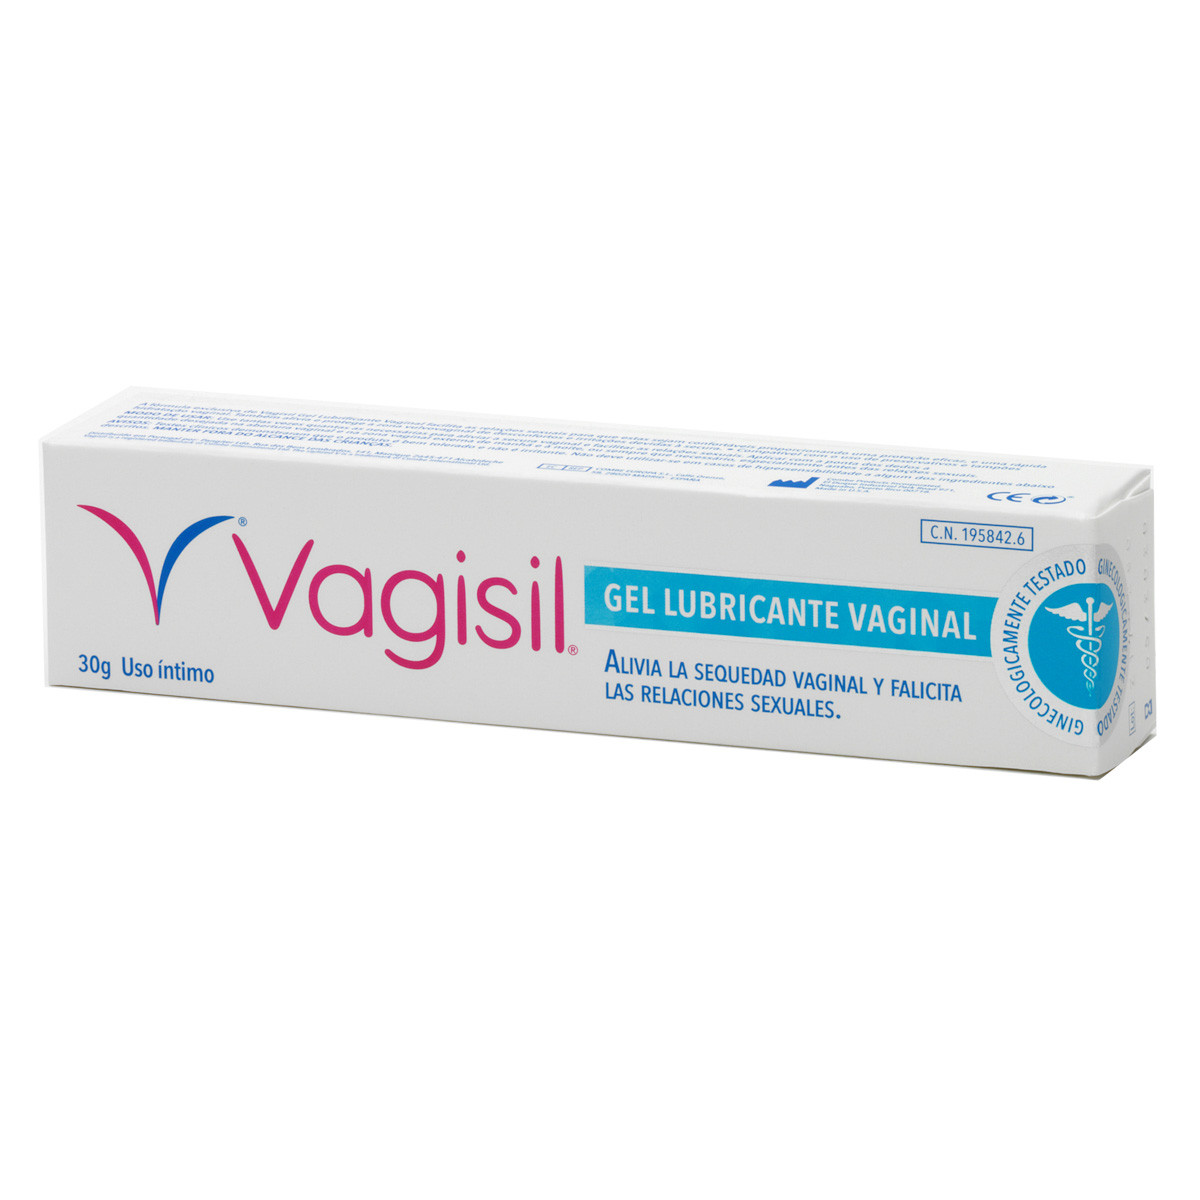 Imagen de Vagisil gel lubricante vaginal 30g